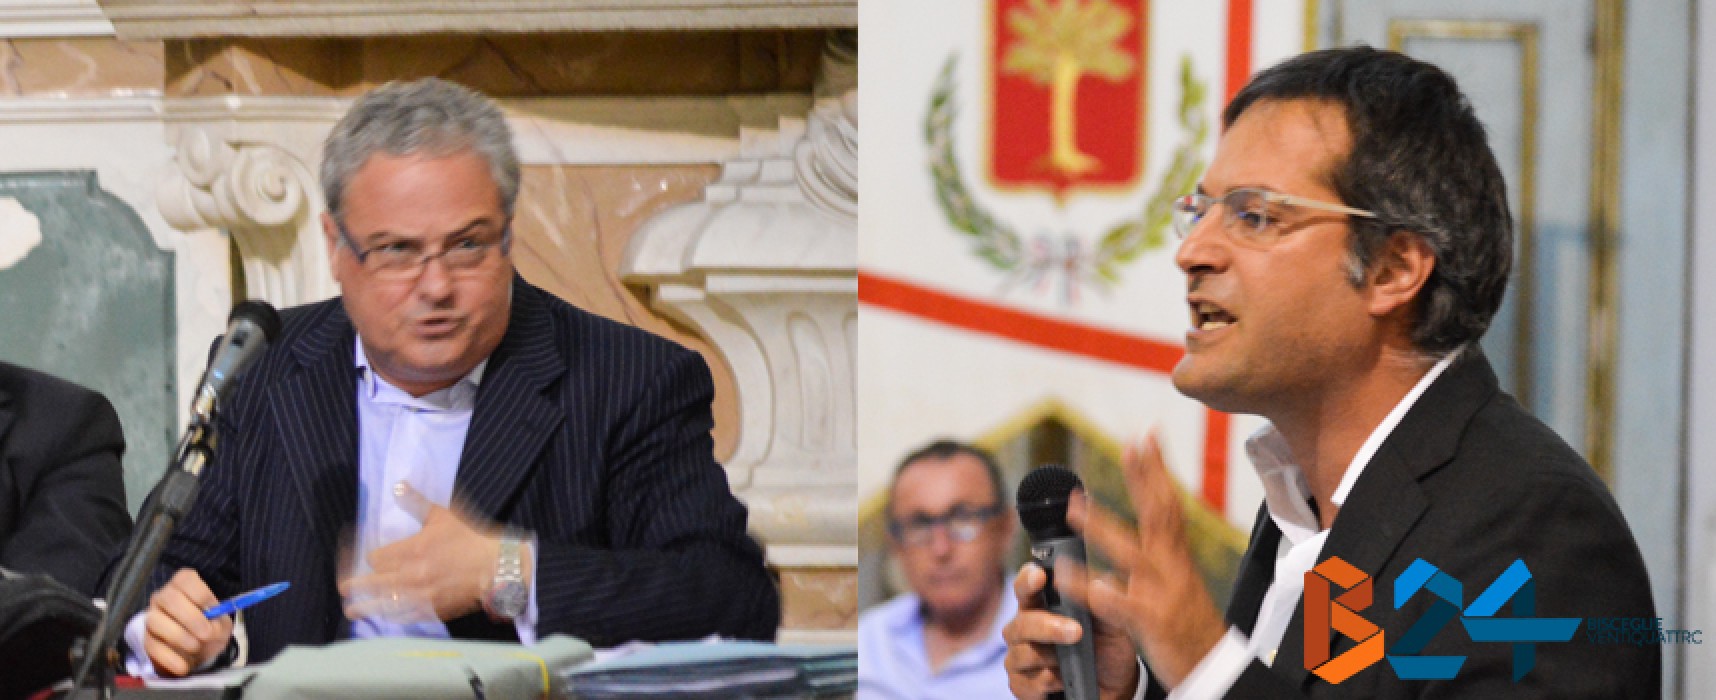 Consiglio comunale: il duro confronto tra Angarano e Franco Napoletano / VIDEO